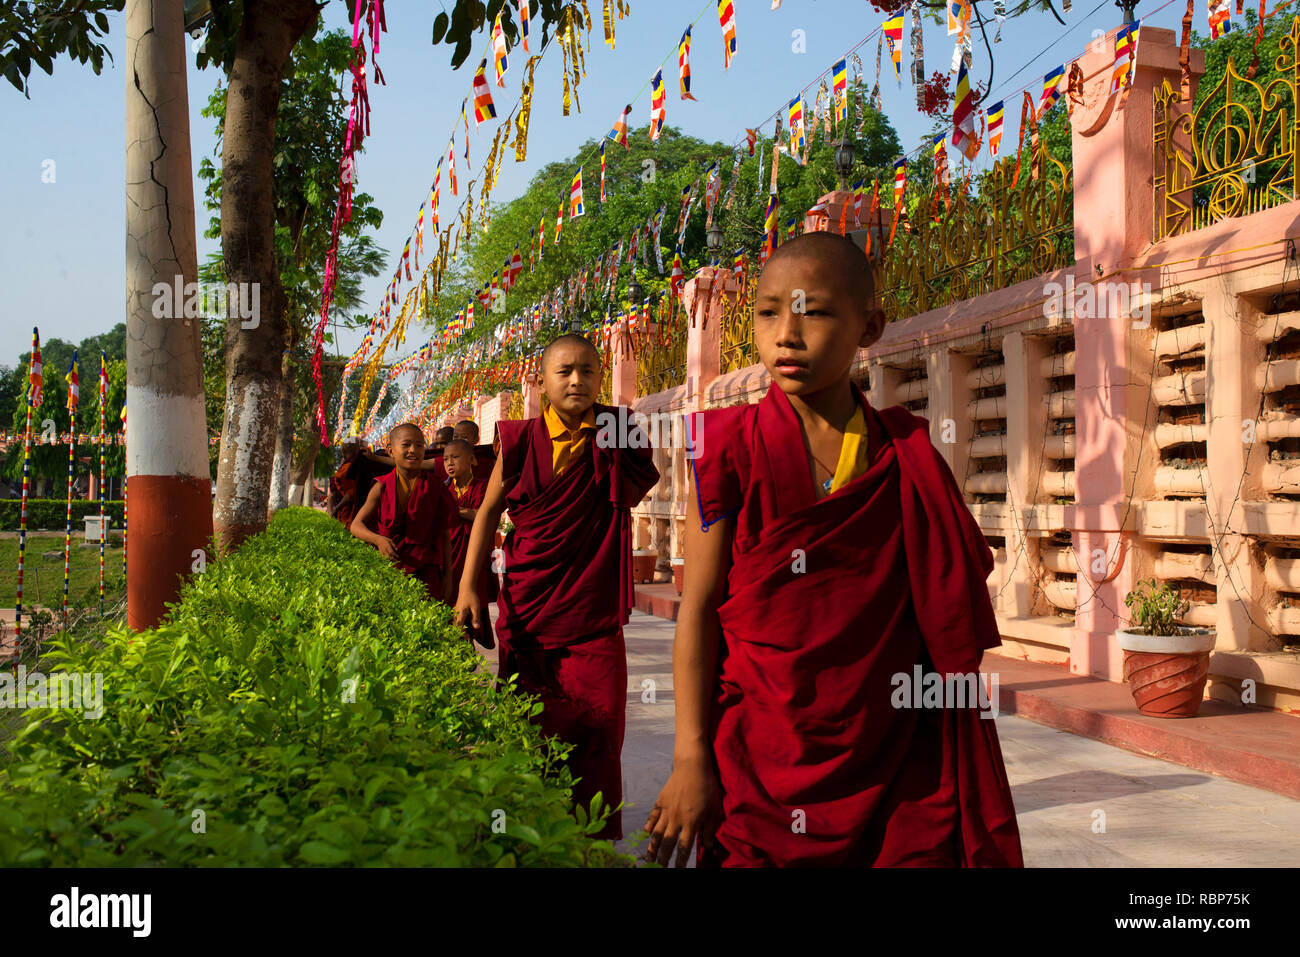 Les moines bouddhistes offrent la prière à Bodh-gaya sur Buddha Purnima célébrations. Banque D'Images